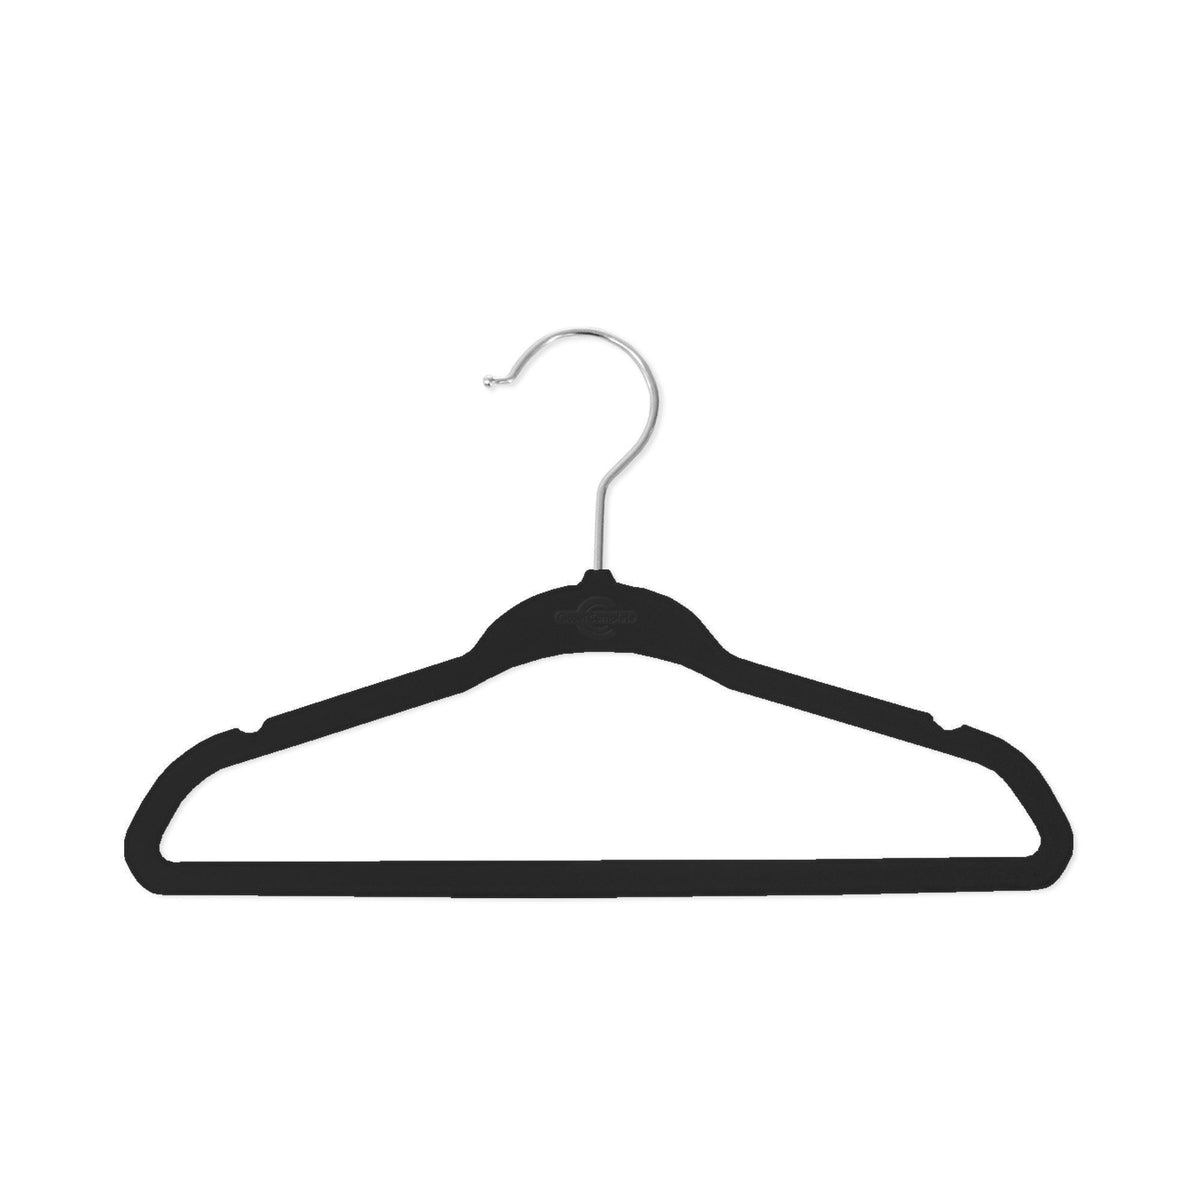 http://www.closetcomplete.com/cdn/shop/products/closet-complete-velvet-hangers-baby-sized-velvet-hangers-71672-7162082951253_1200x1200.jpg?v=1552521250